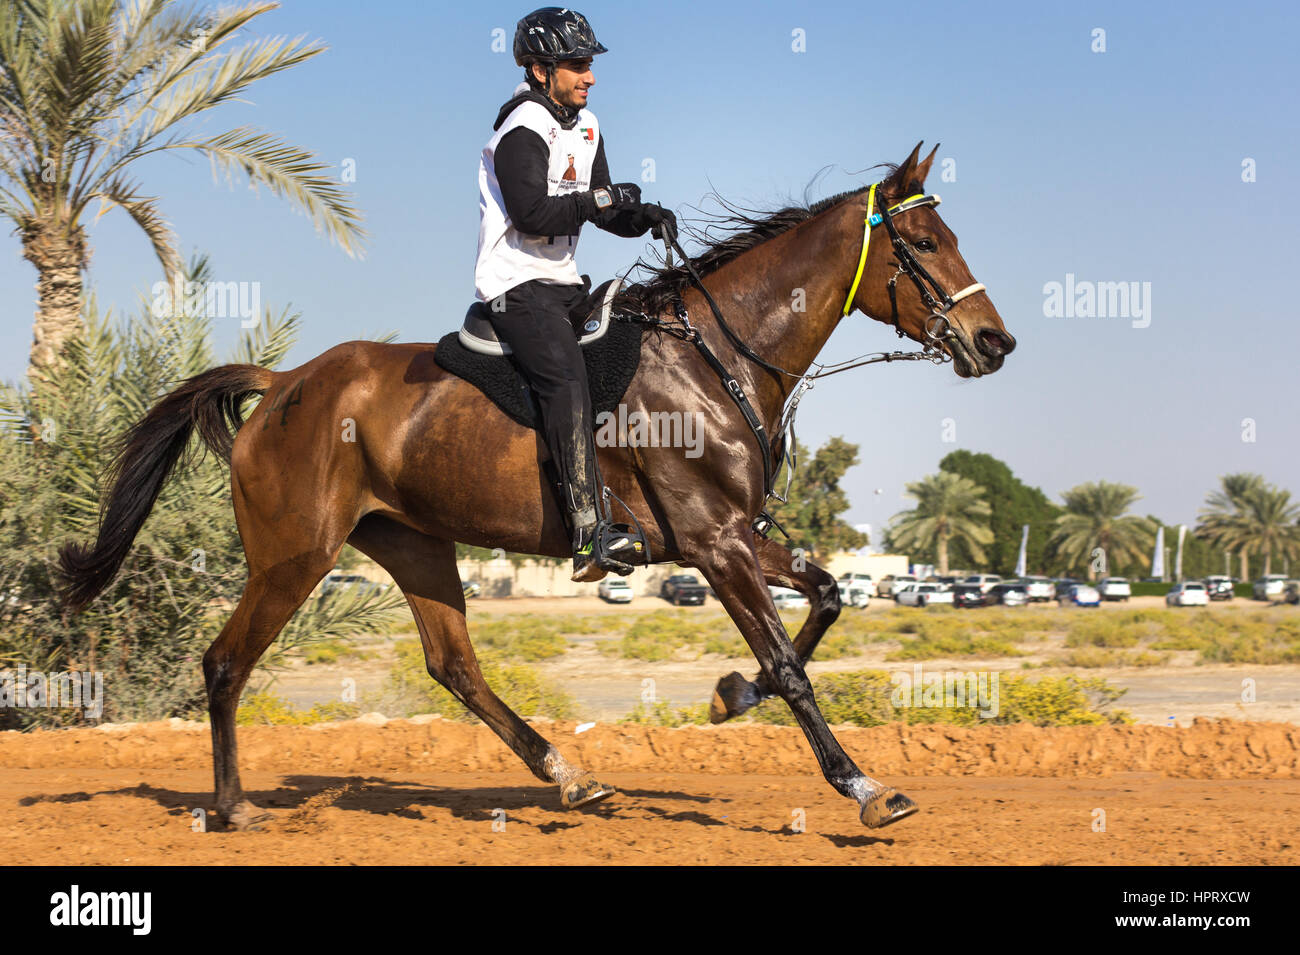 Dubaï, Émirats arabes unis - Dec 19, 2014 : le cavalier et son cheval participant à une course d'endurance du désert. Banque D'Images